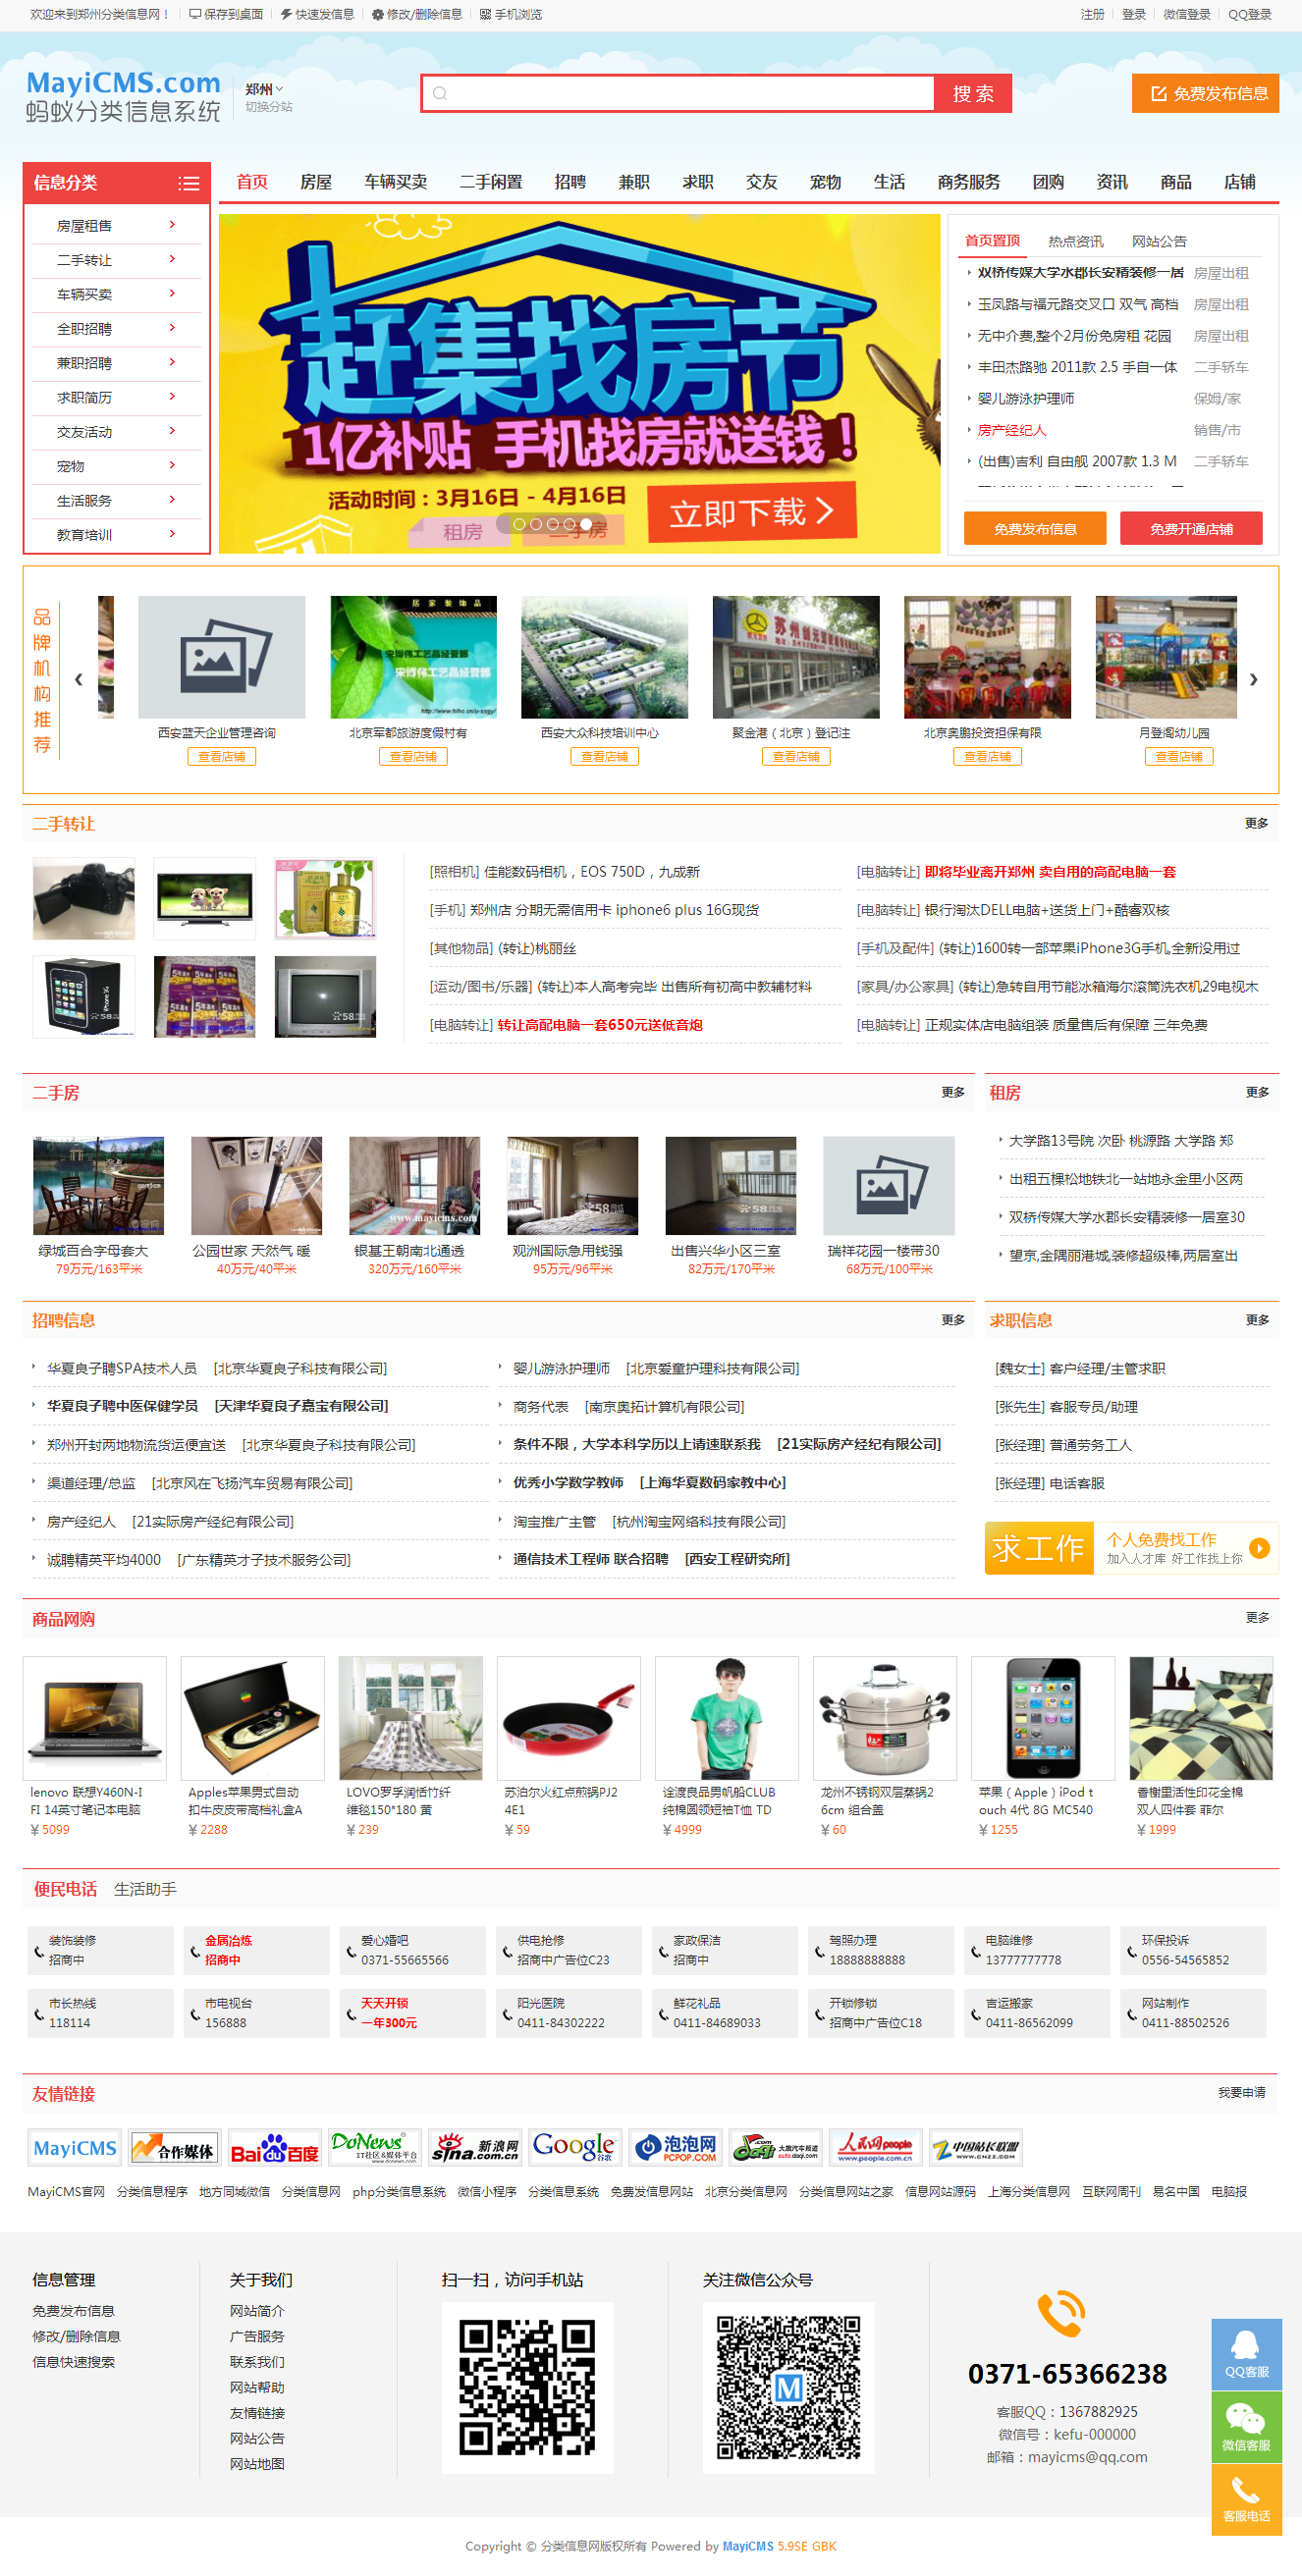 郑州分类信息系统-郑州免费发信息网站-郑州分类信息网.png